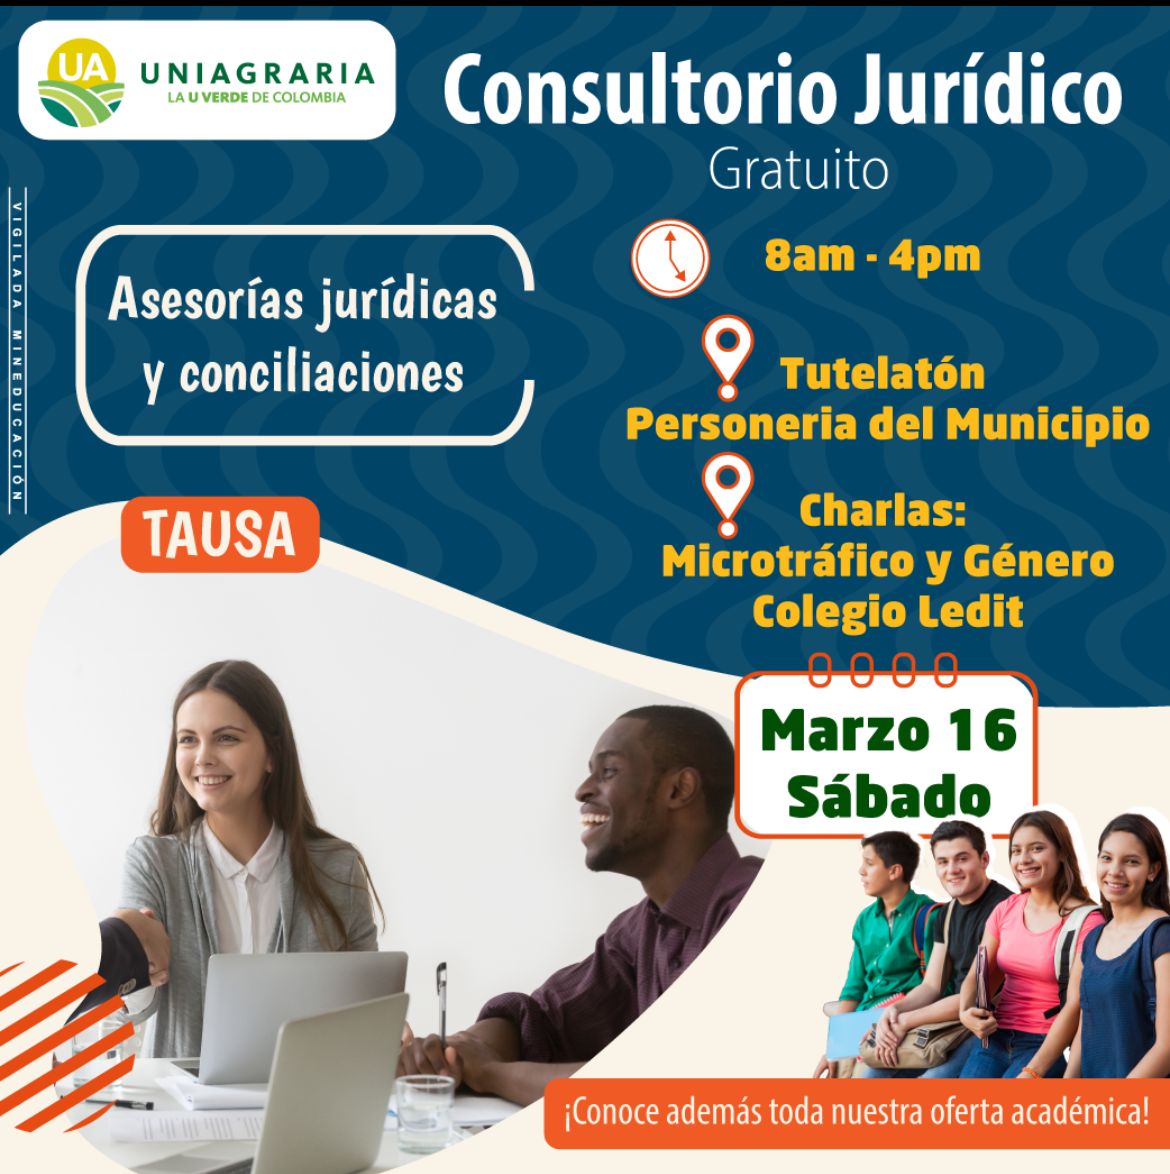 Consultorio Jurídico gratuito – Asesorías jurídicas y conciliaciones en Tausa